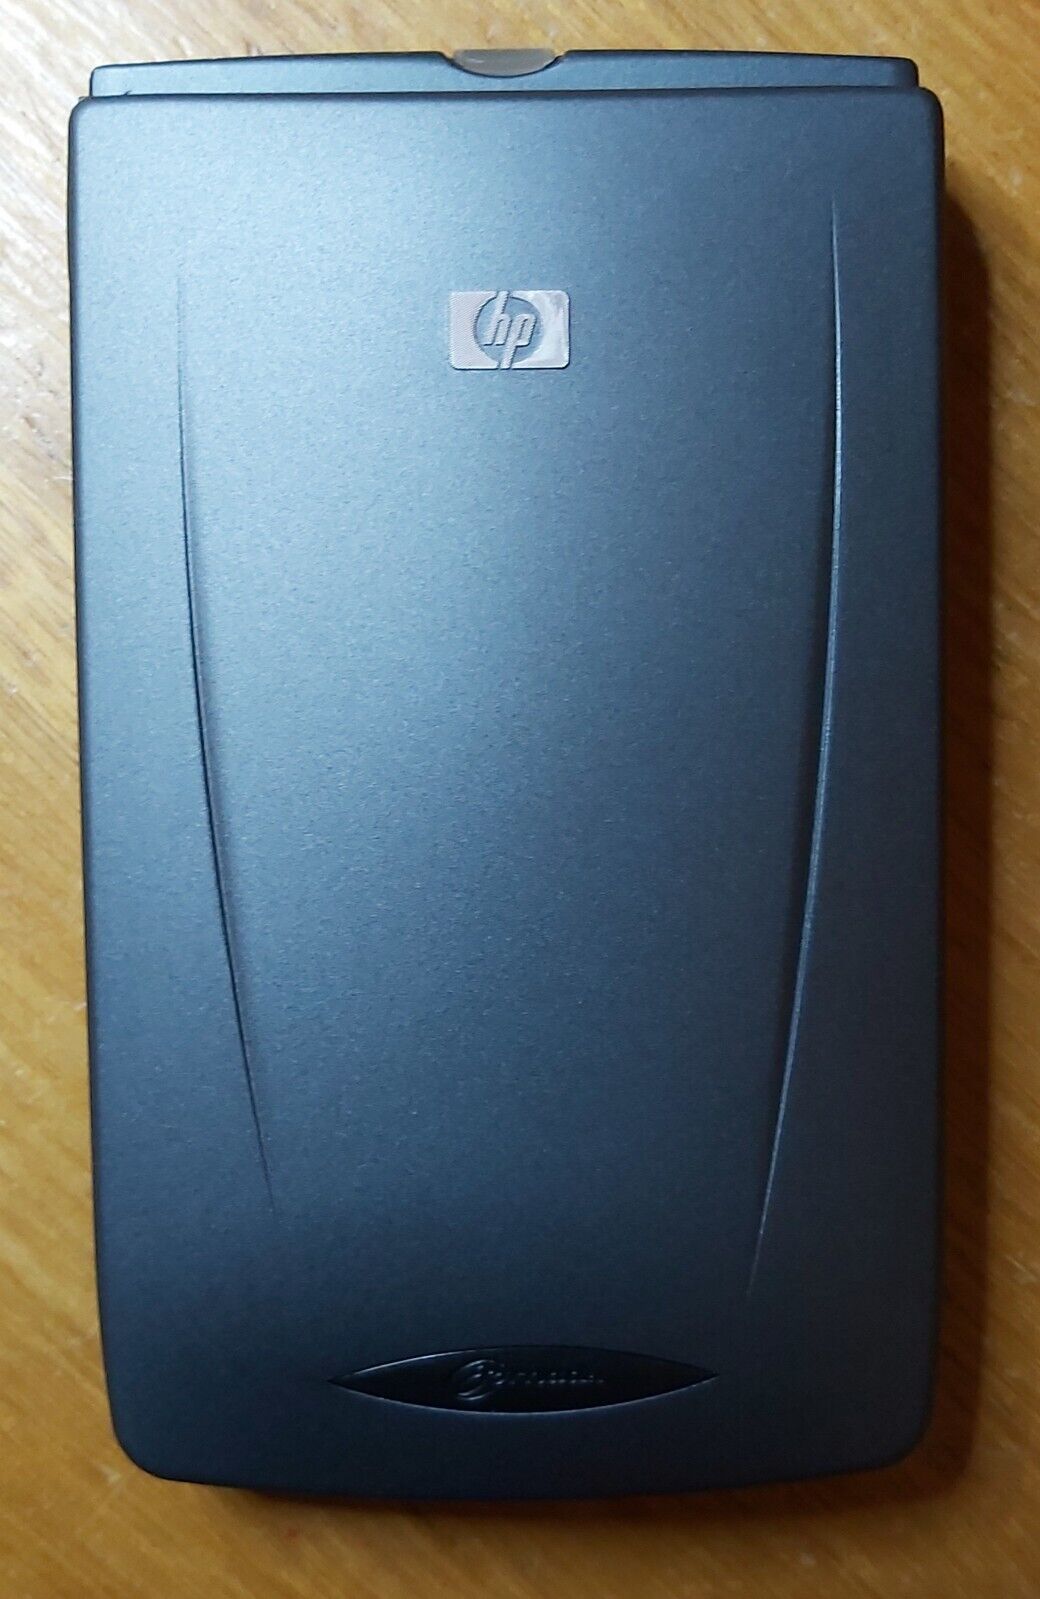 HP JORNADA 540 POCKET PC COLLECTABLE VINTAGE  GENUINE ORIGINAL